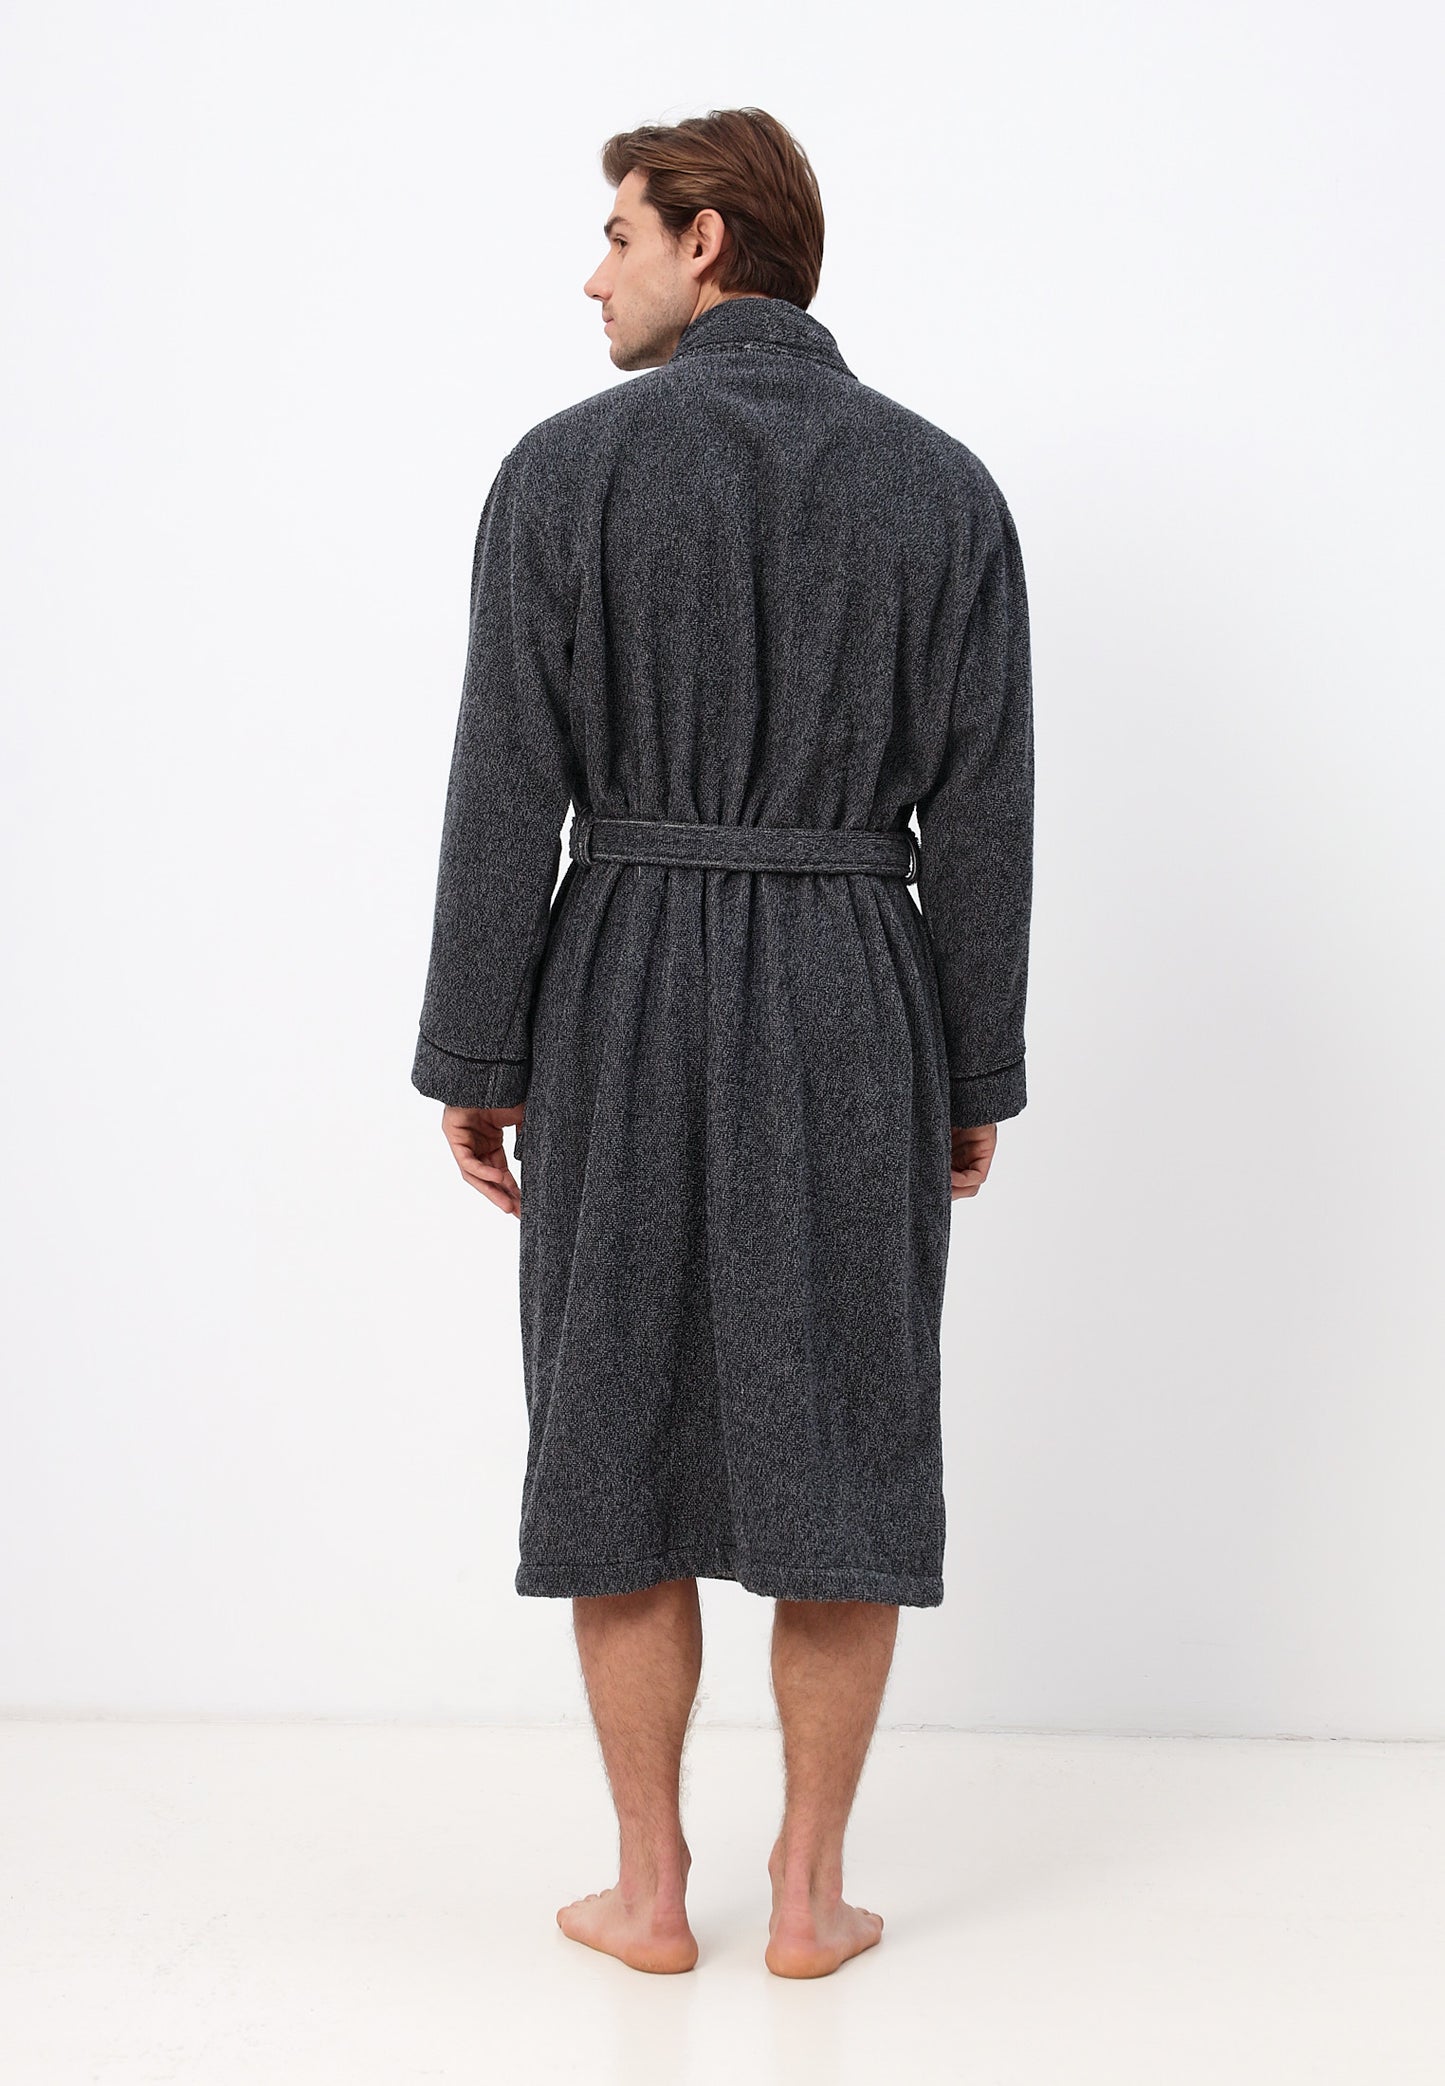 Herren Kimono Bademantel aus 100% Baumwolle in melange Design LMS-6592 Schwarz/Weiß Melange